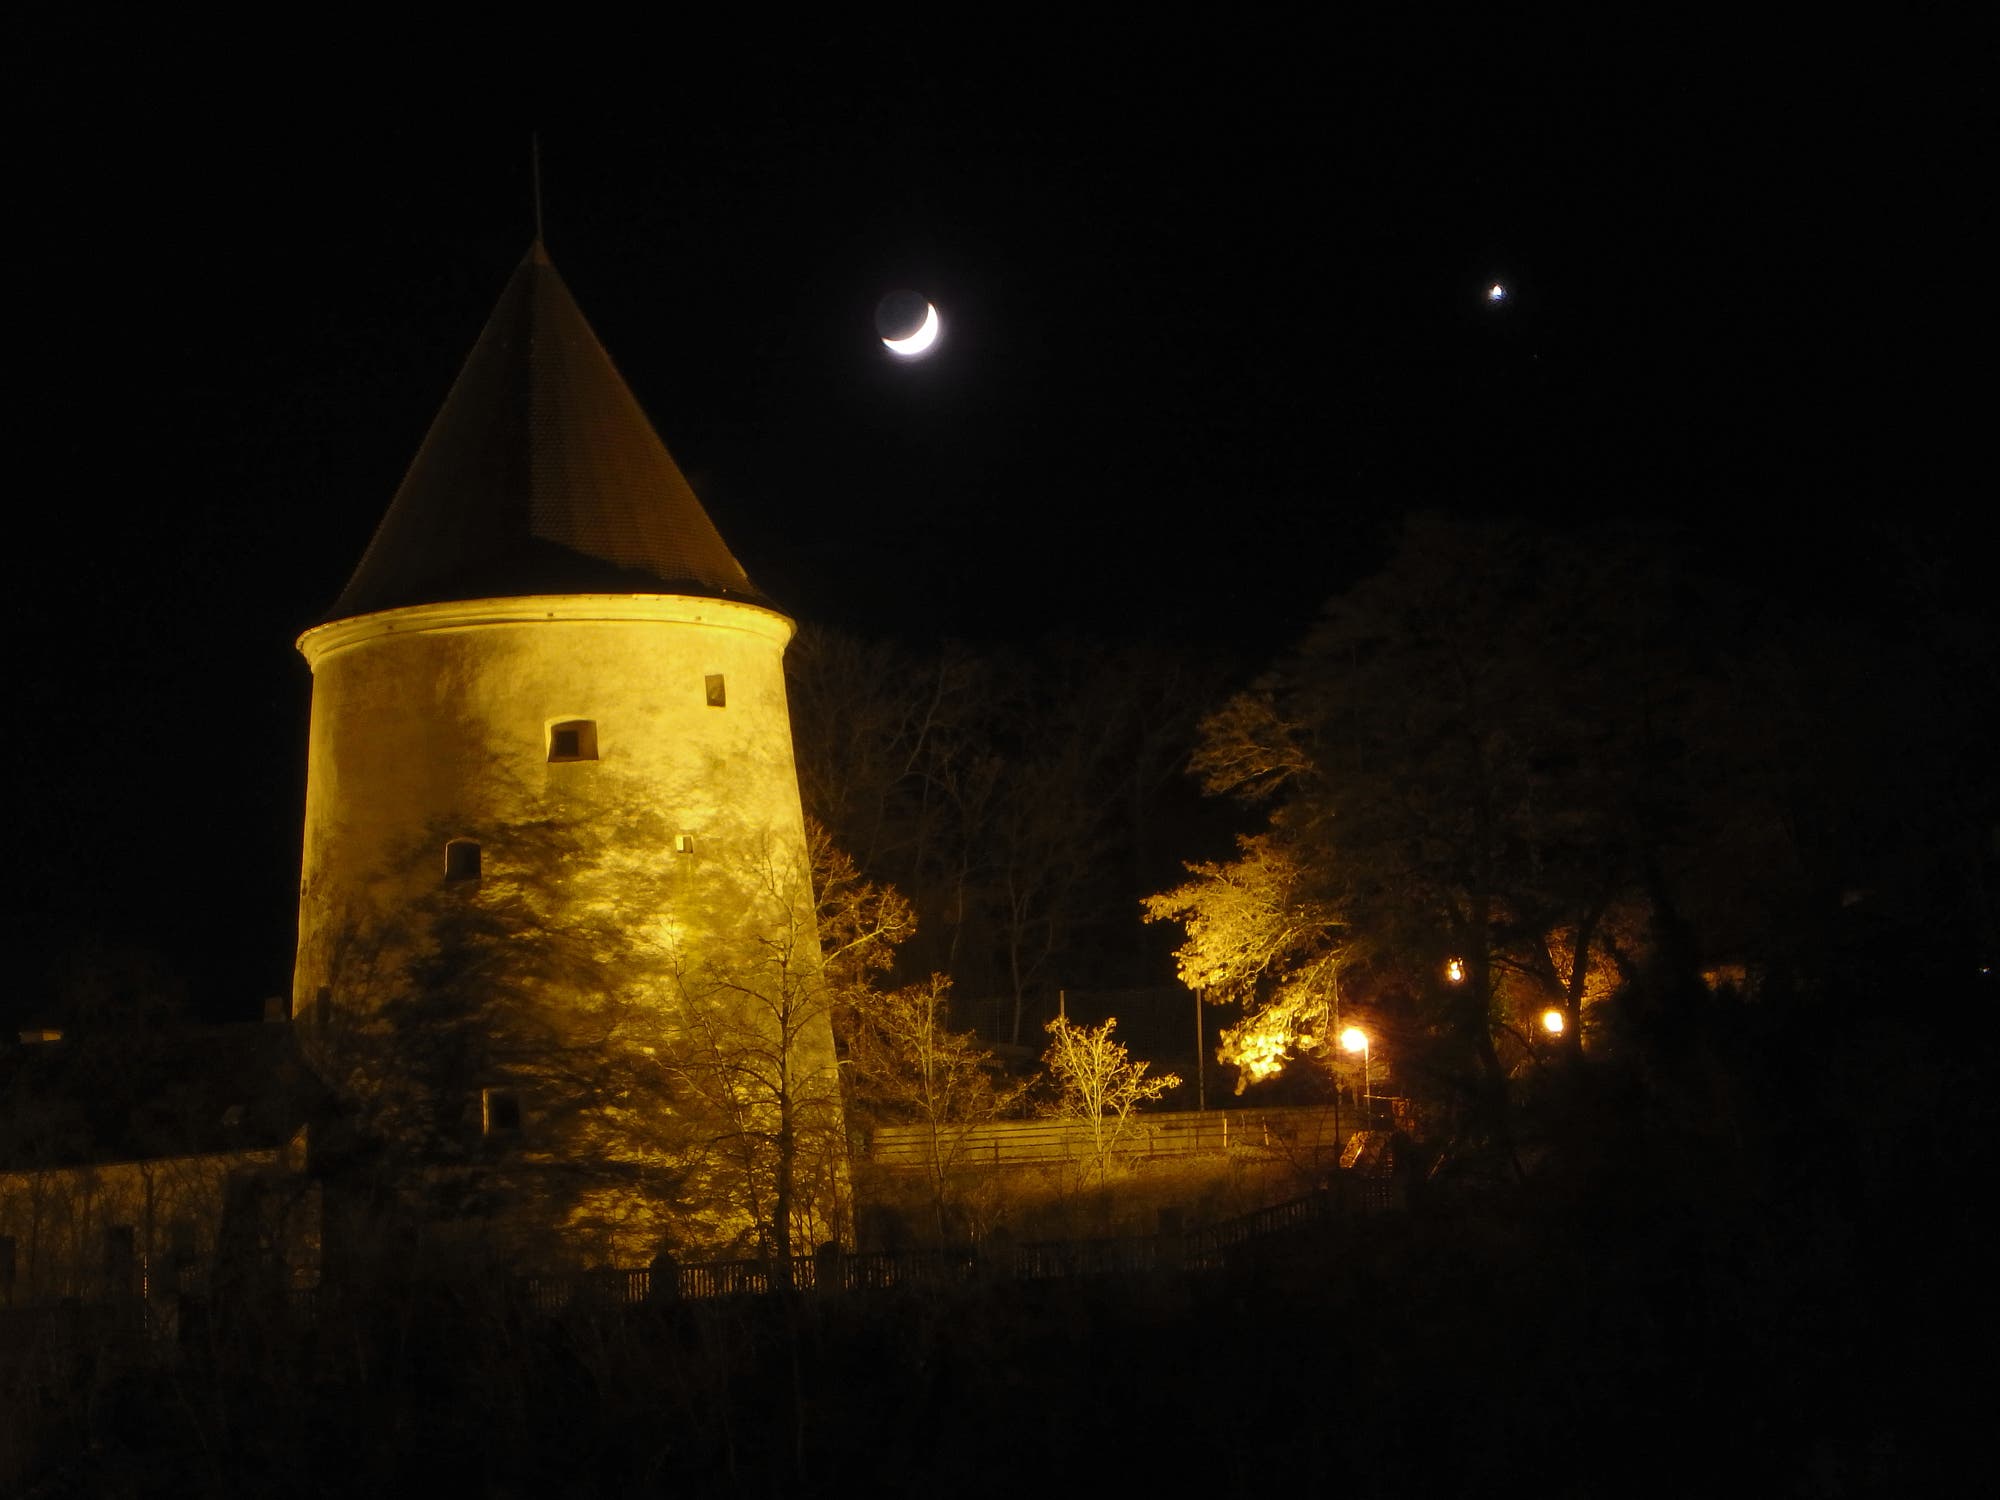 Mond mit Erdlicht, Venus und Pulverturm in Krems NÖ